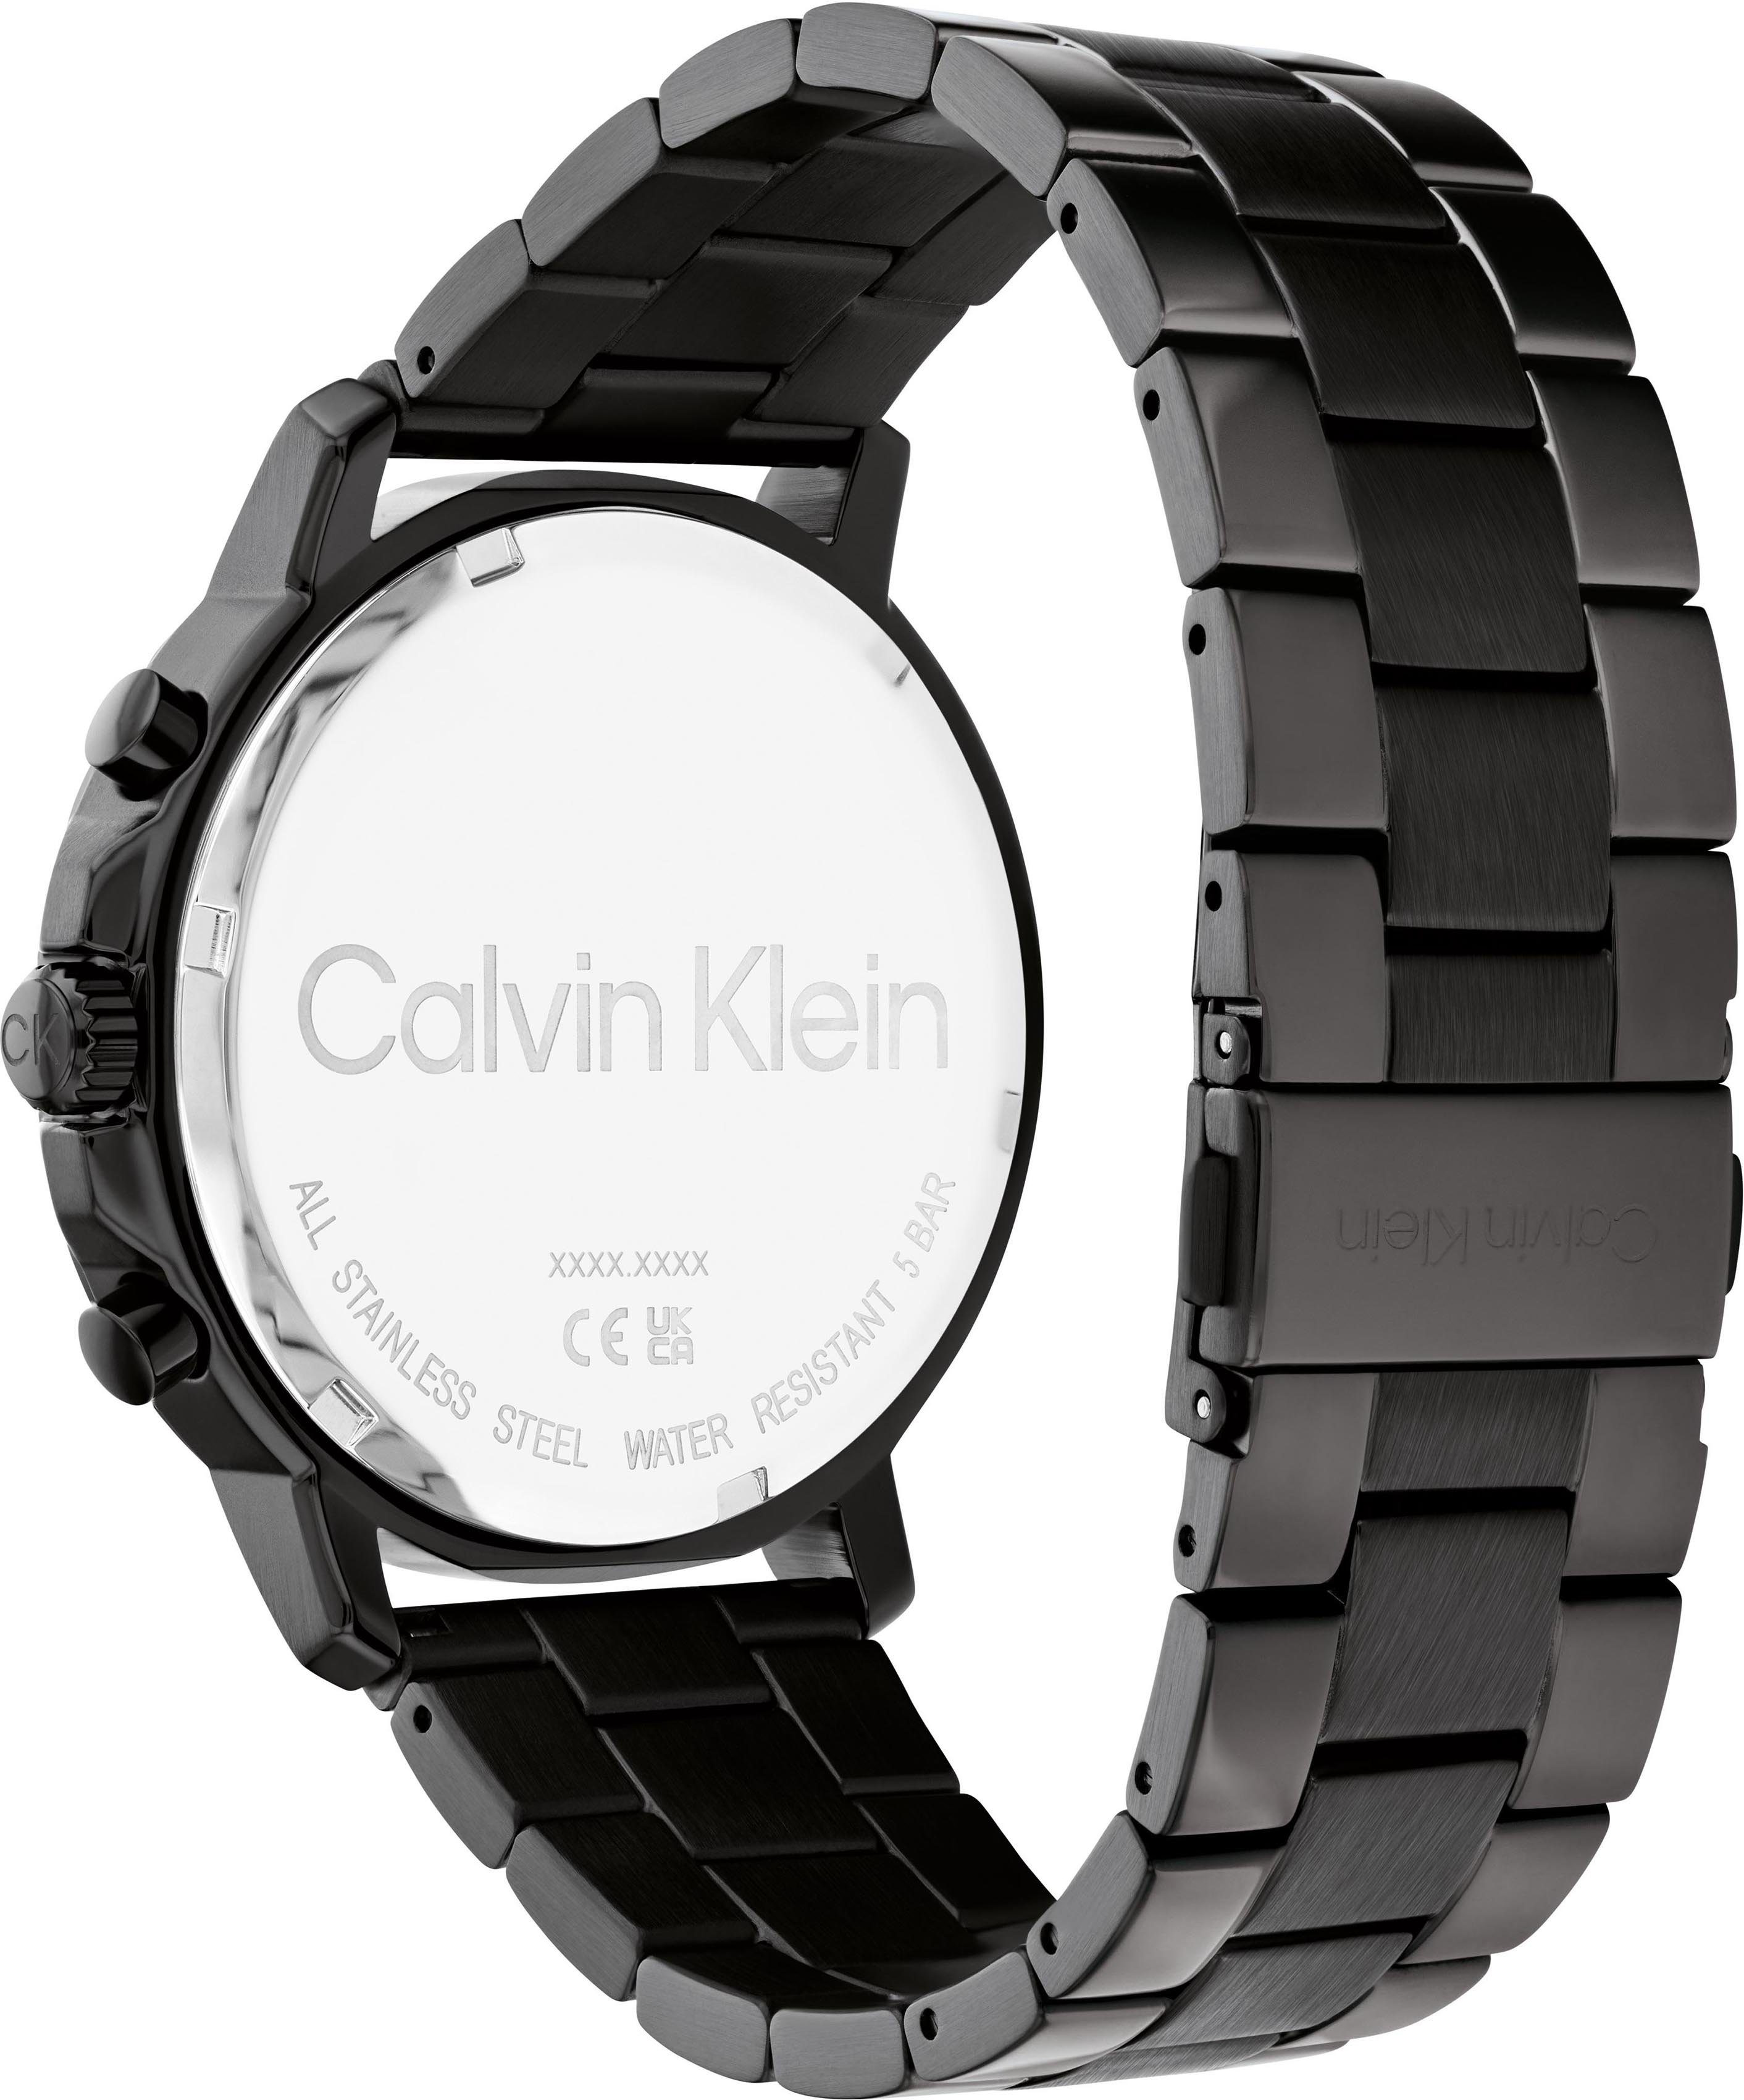 Herren Uhren Calvin Klein Multifunktionsuhr Gauge Sport, 25200069